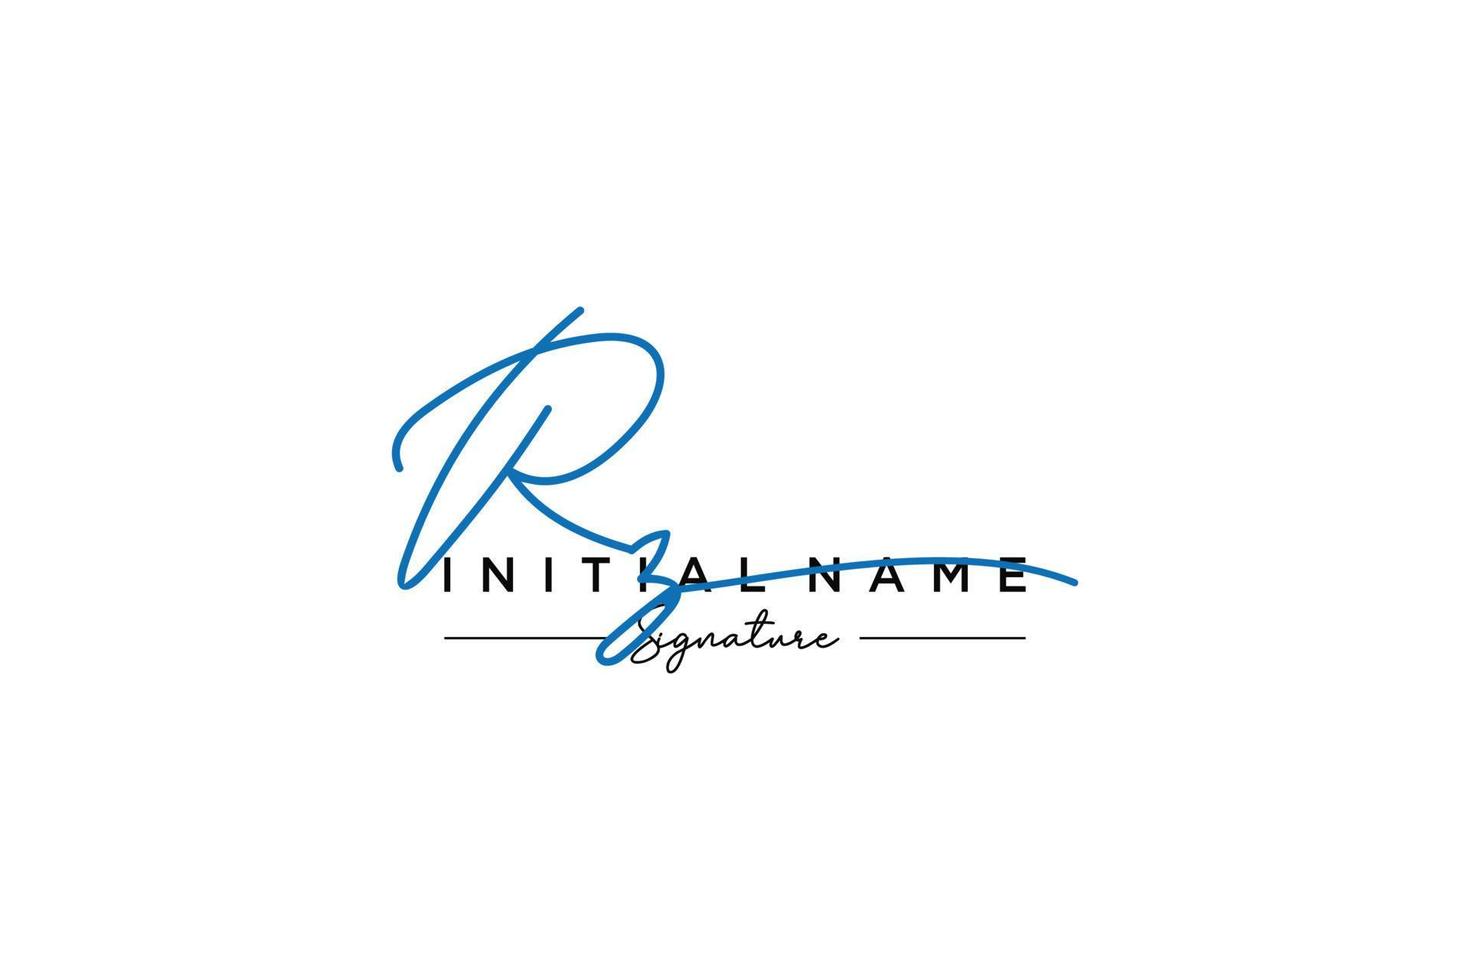 vector de plantilla de logotipo de firma inicial rz. ilustración de vector de letras de caligrafía dibujada a mano.